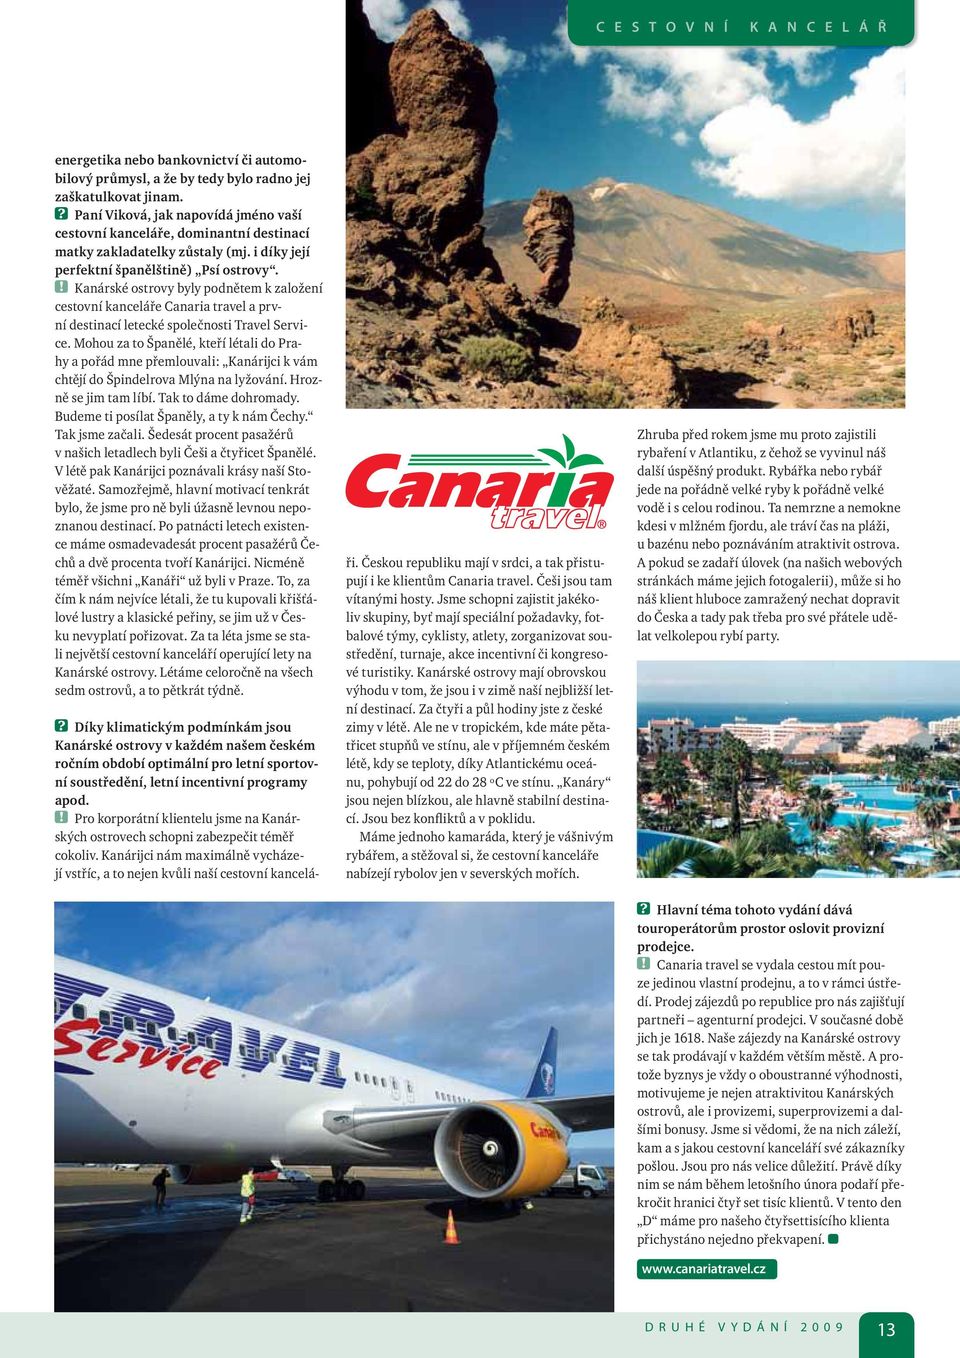 ! Kanárské ostrovy byly podnětem k založení cestovní kanceláře Canaria travel a první destinací letecké společnosti Travel Service.